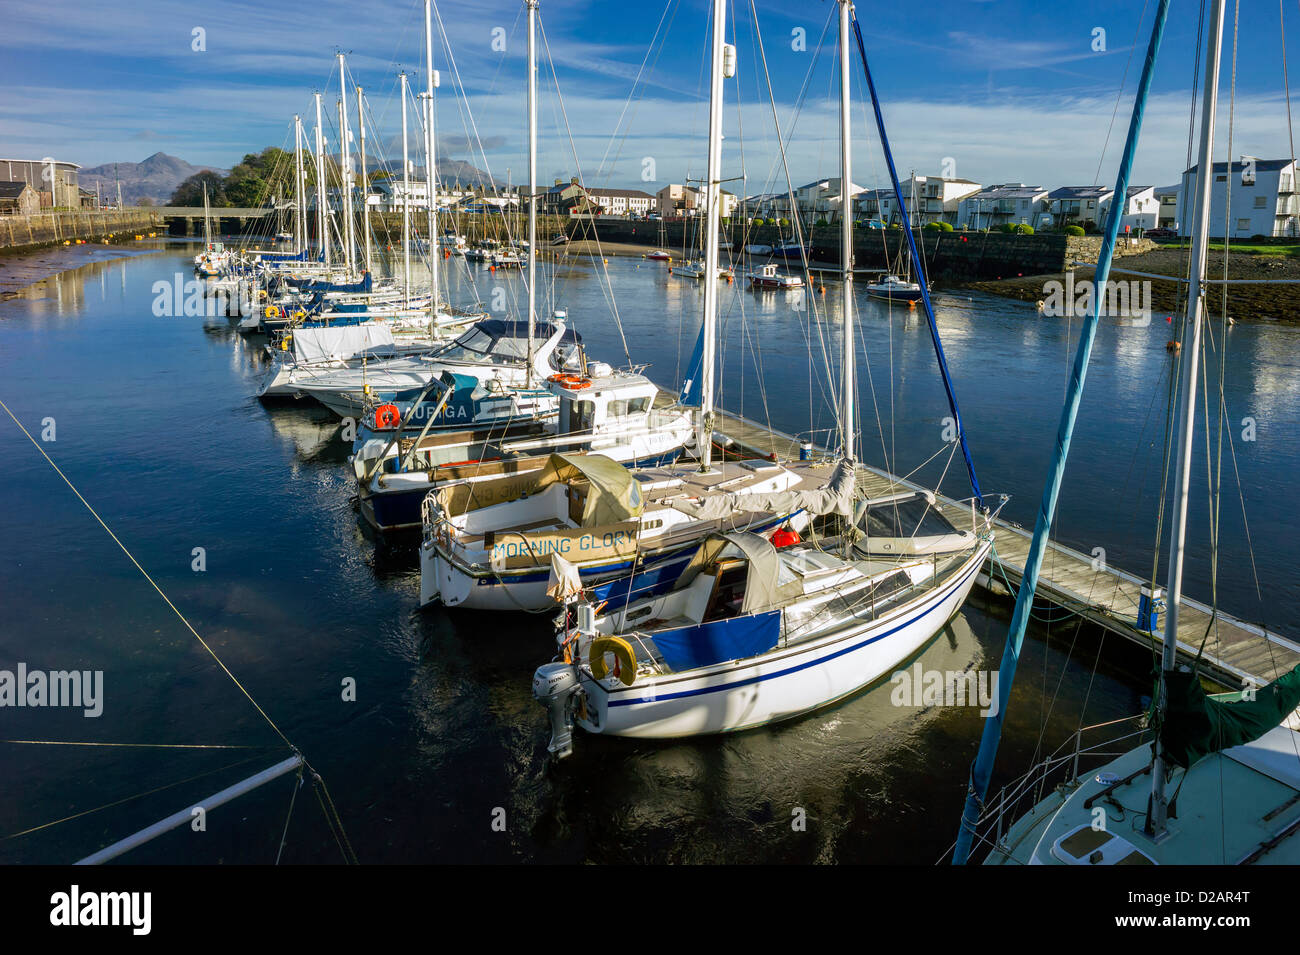 Bateaux et yachts sont amarrés tous de près dans la période d'hiver dans le port de Portmadog en attendant le printemps, saison de navigation. Banque D'Images